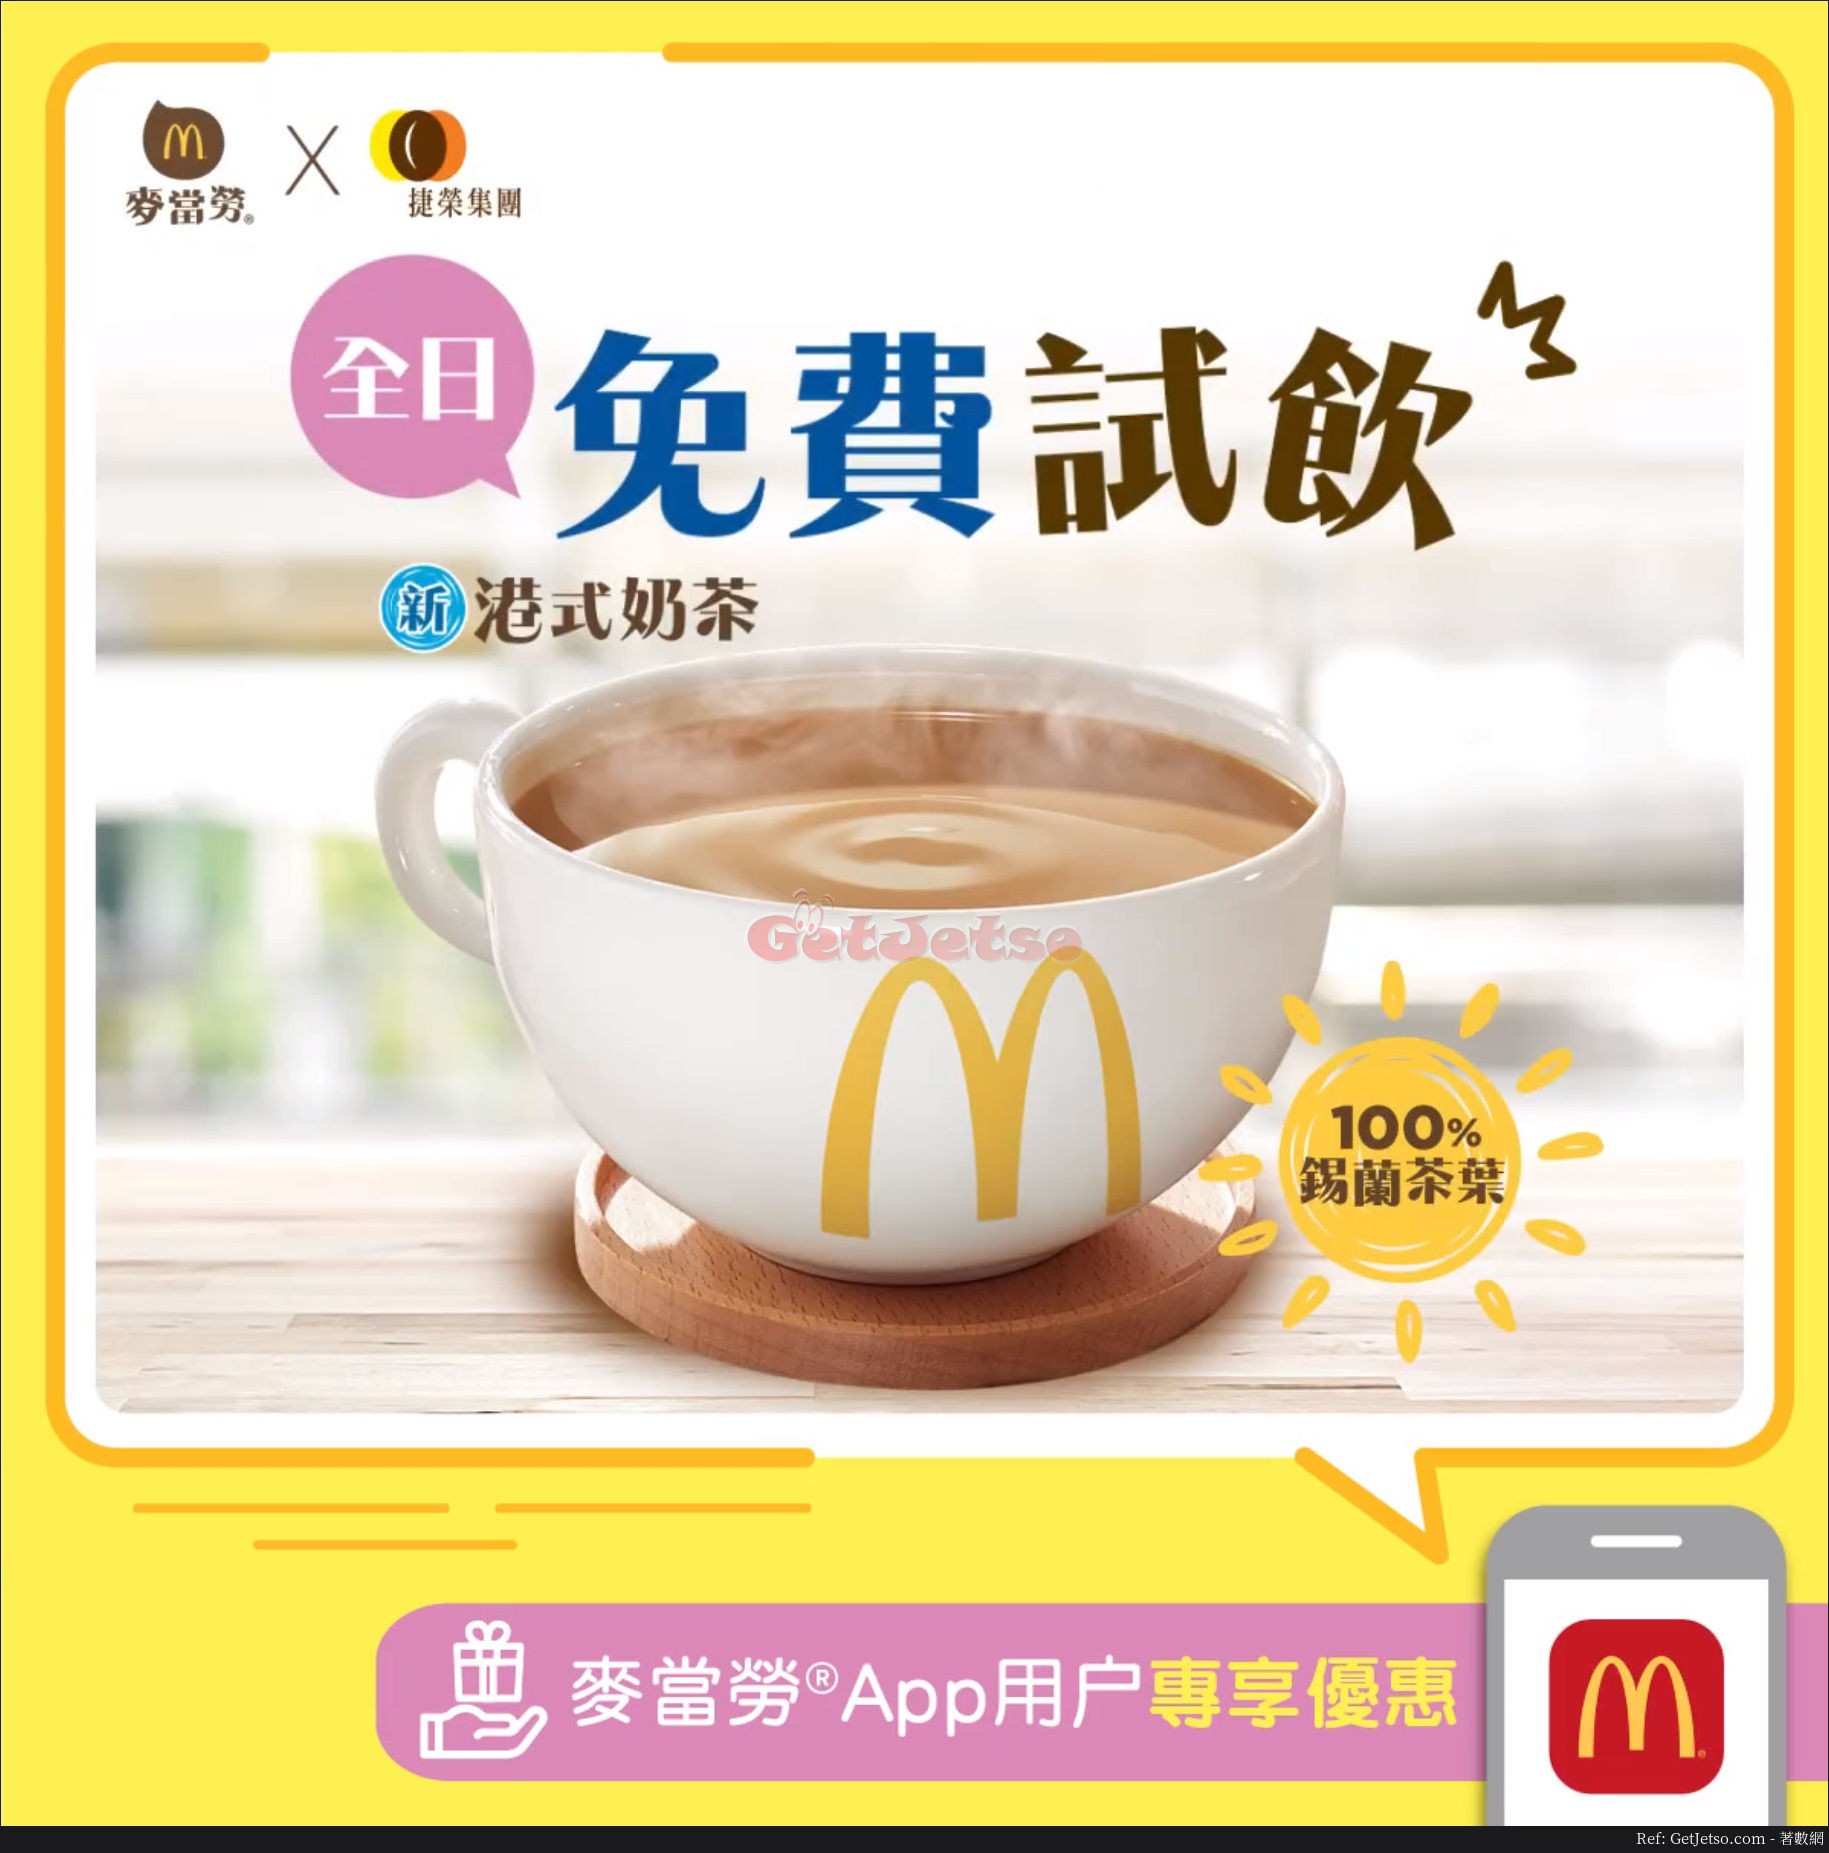 麥當勞App 免費港式奶茶、買脆香雞翼2件+汽水下午茶優惠(至18年5月27日)圖片1